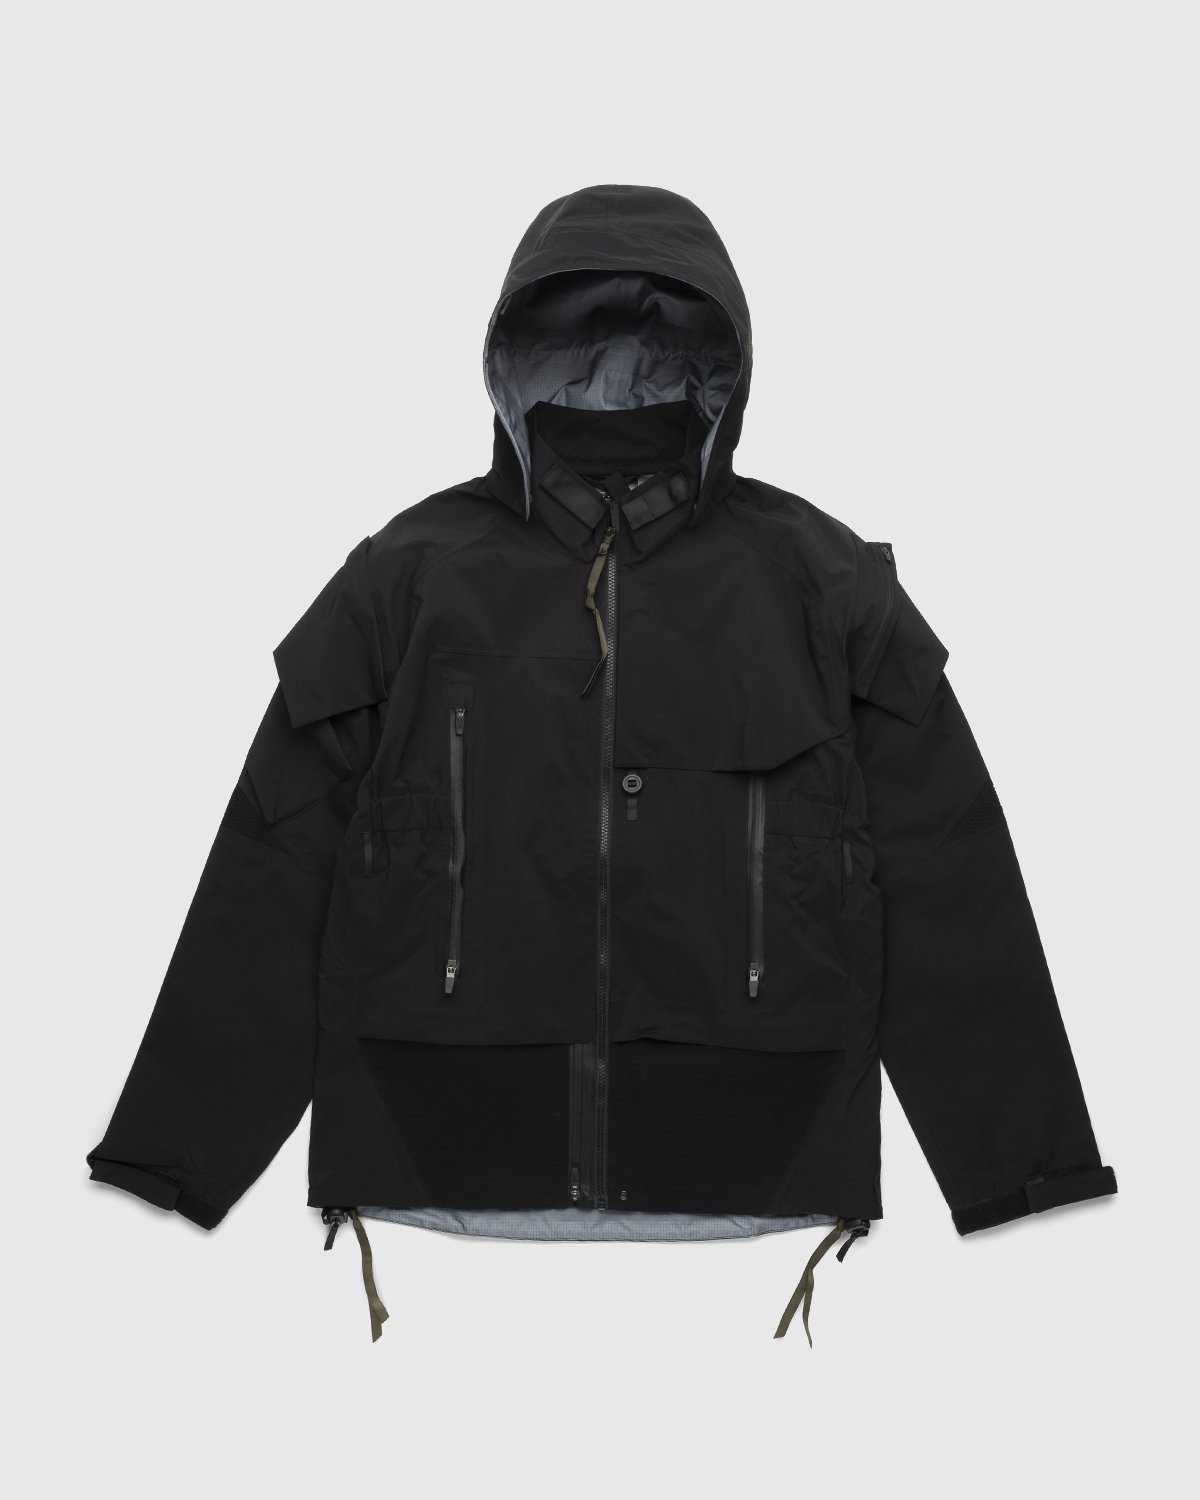 ACRONYM - J16-GT Jacket Black - Clothing - Black - Image 1